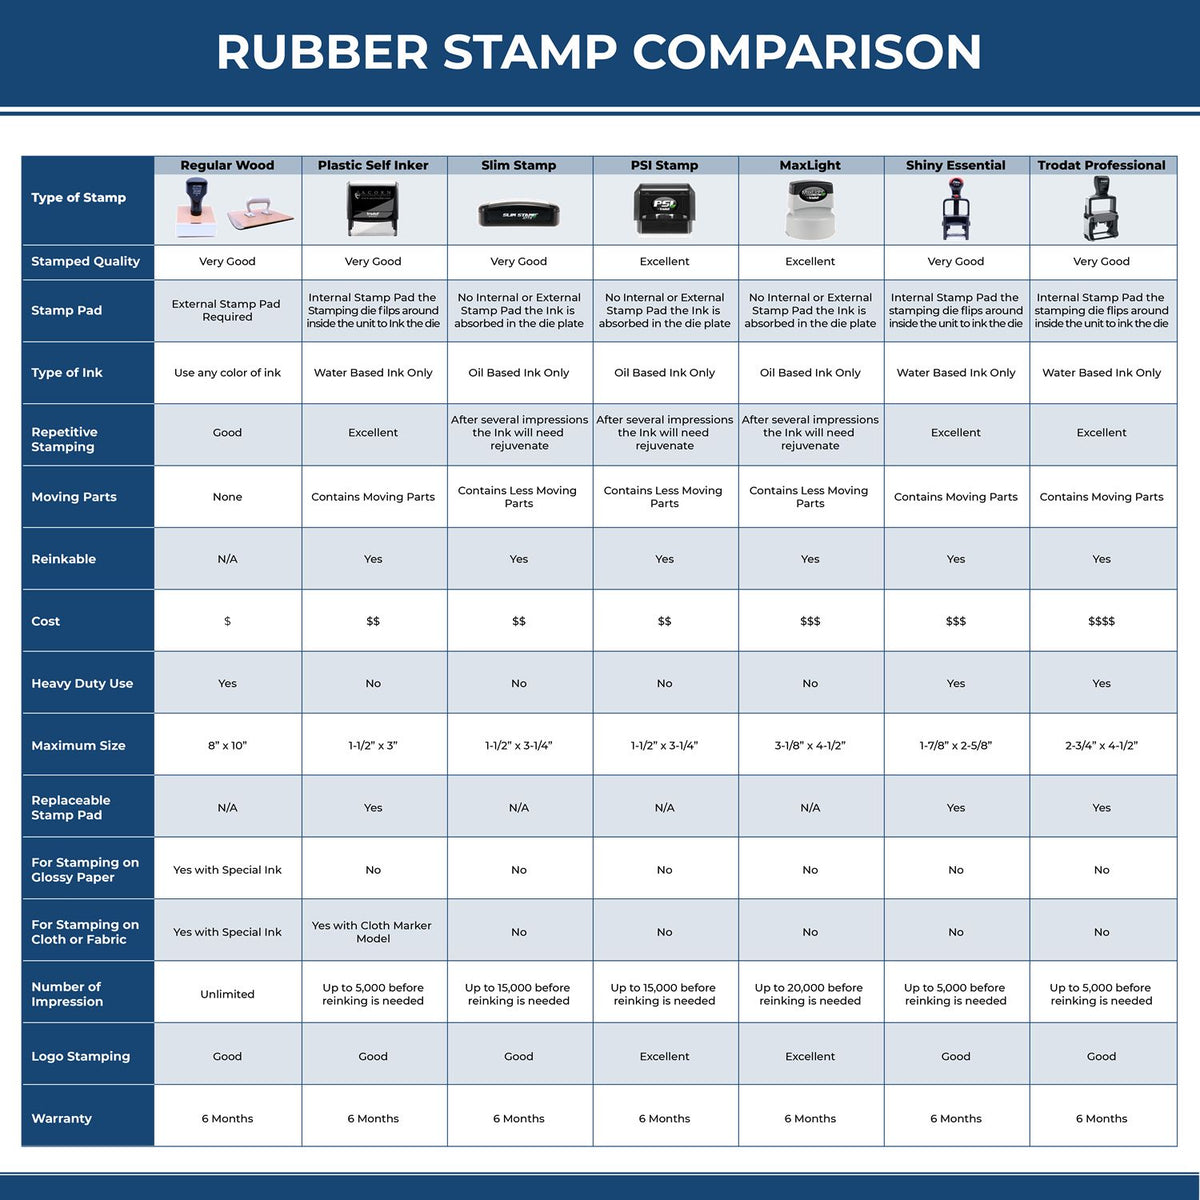 Closed Rubber Stamp 4011R Rubber Stamp Comparison